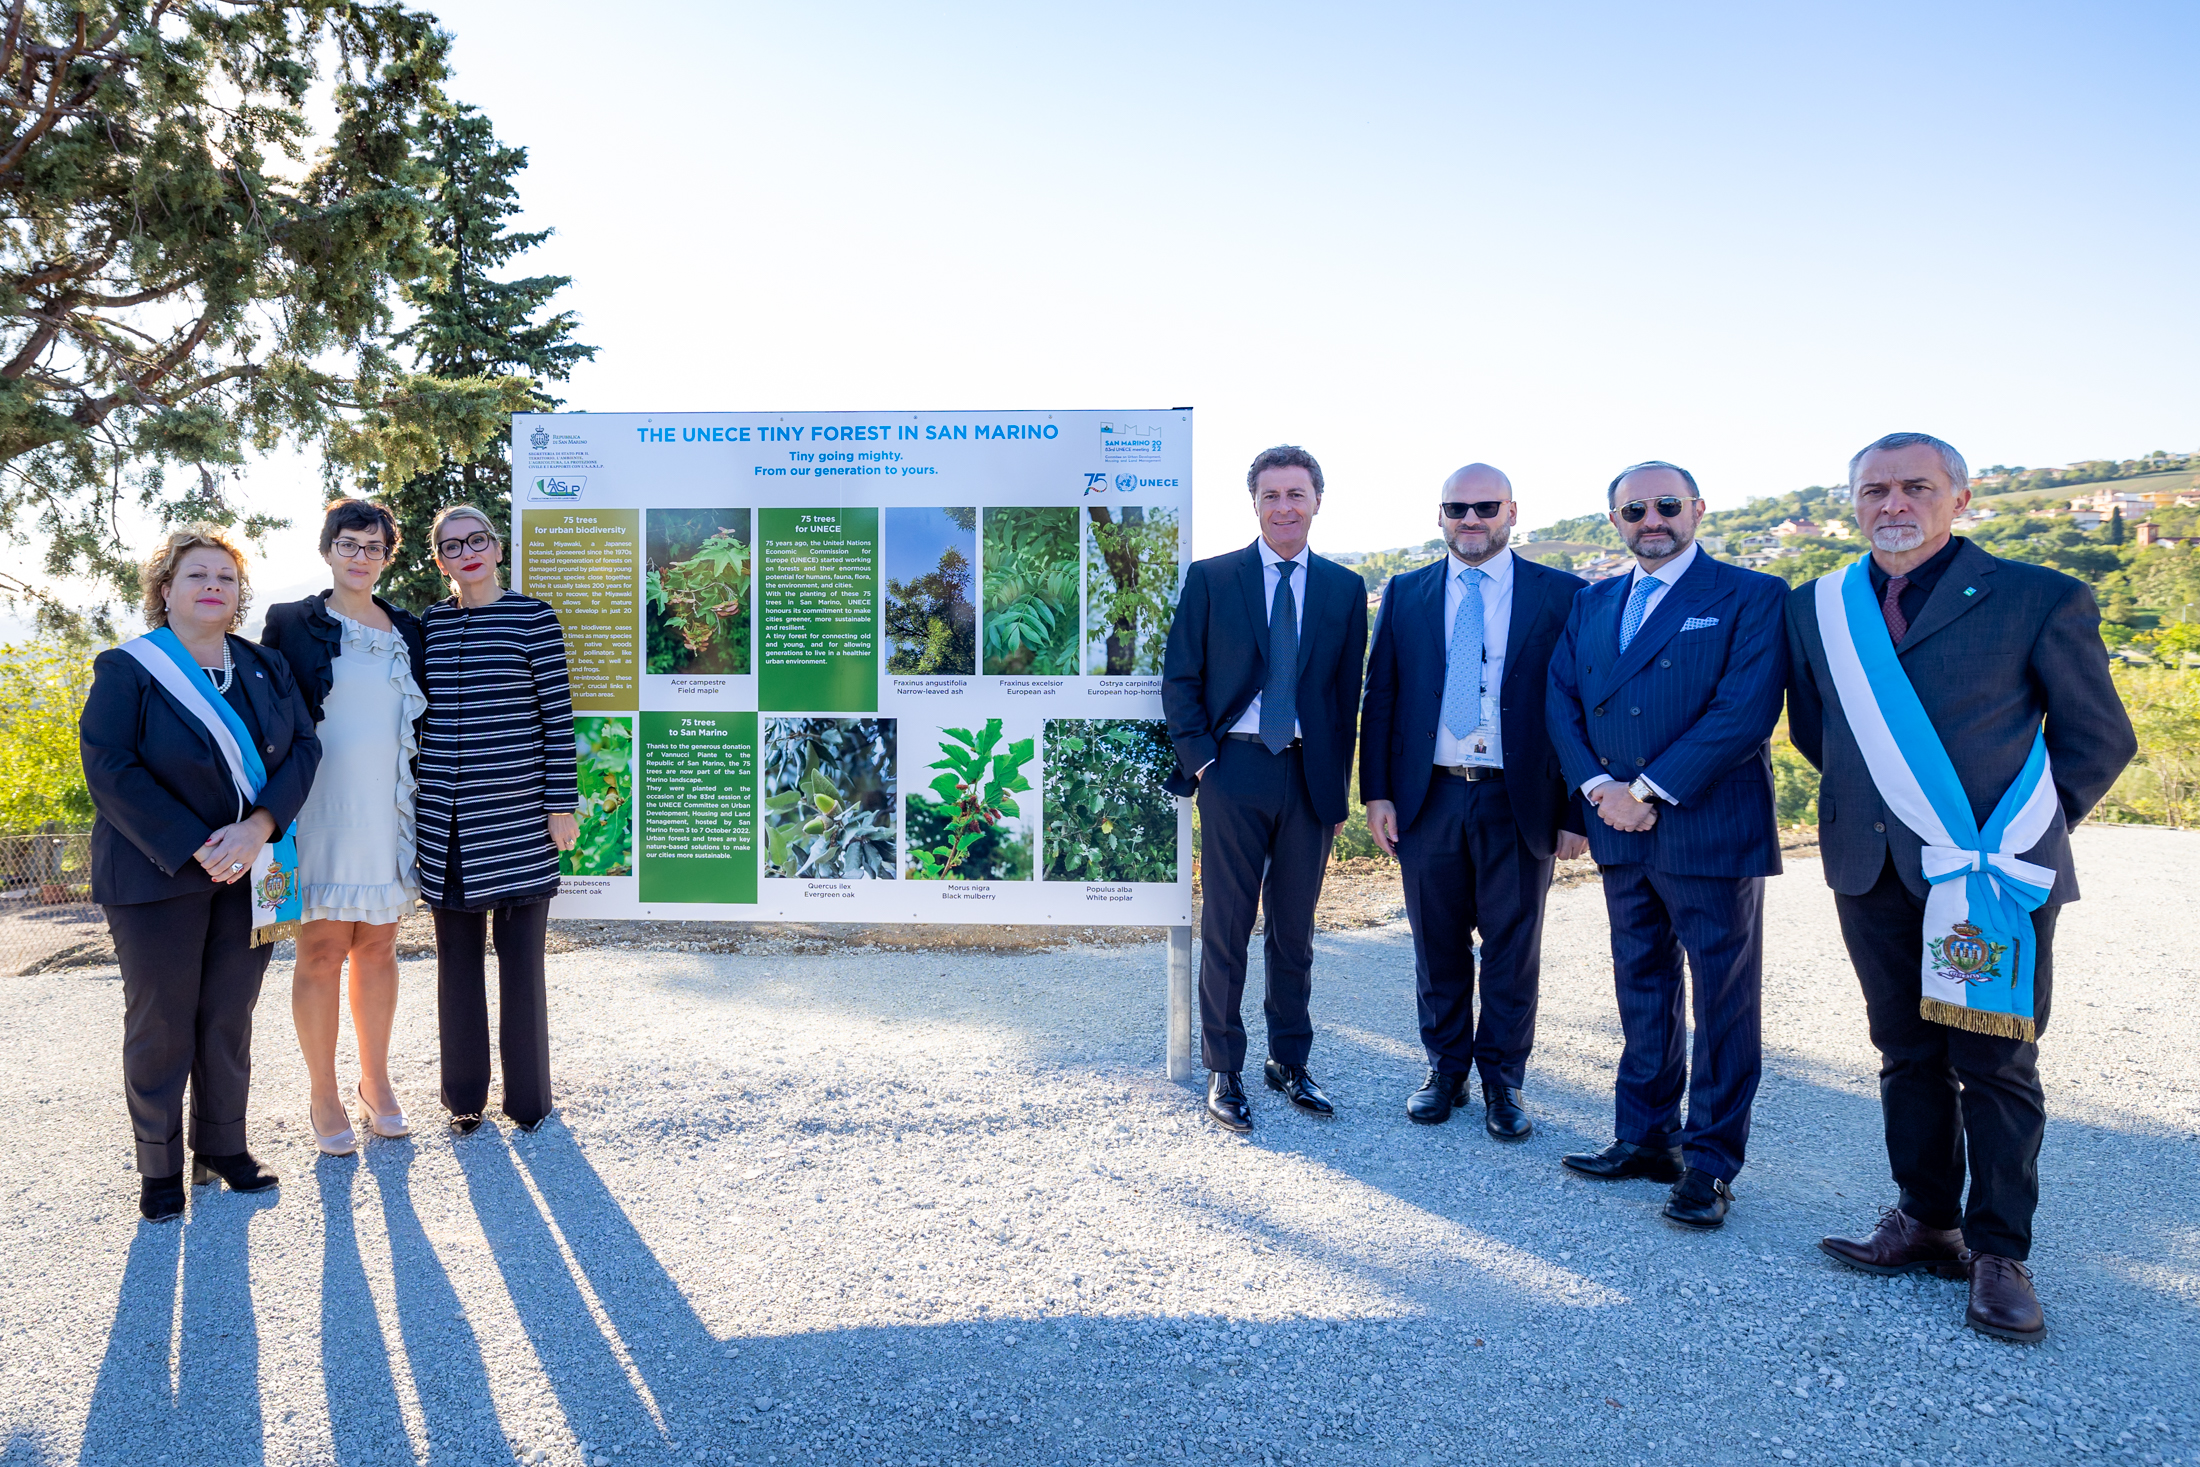 San Marino. Nasce un nuovo bosco piantati 75 alberi per migliorare il futuro